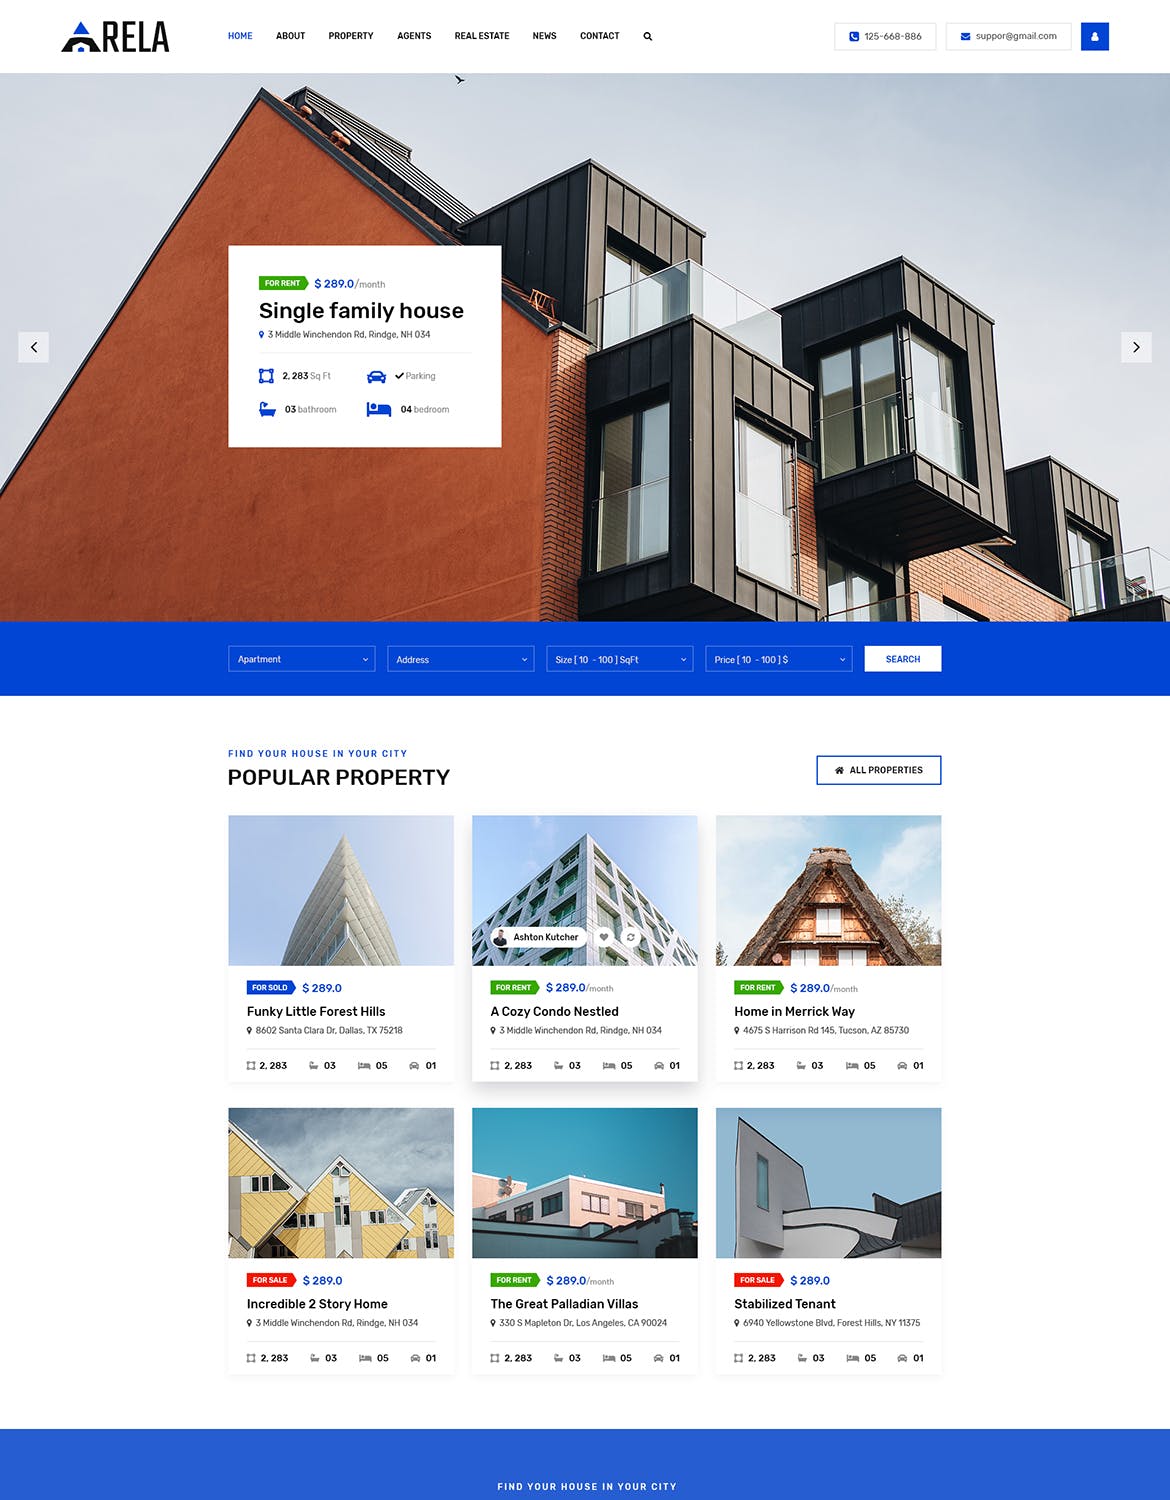 房地产经销商城网站设计PSD模板 Arela | Real Estate PSD Template插图(1)